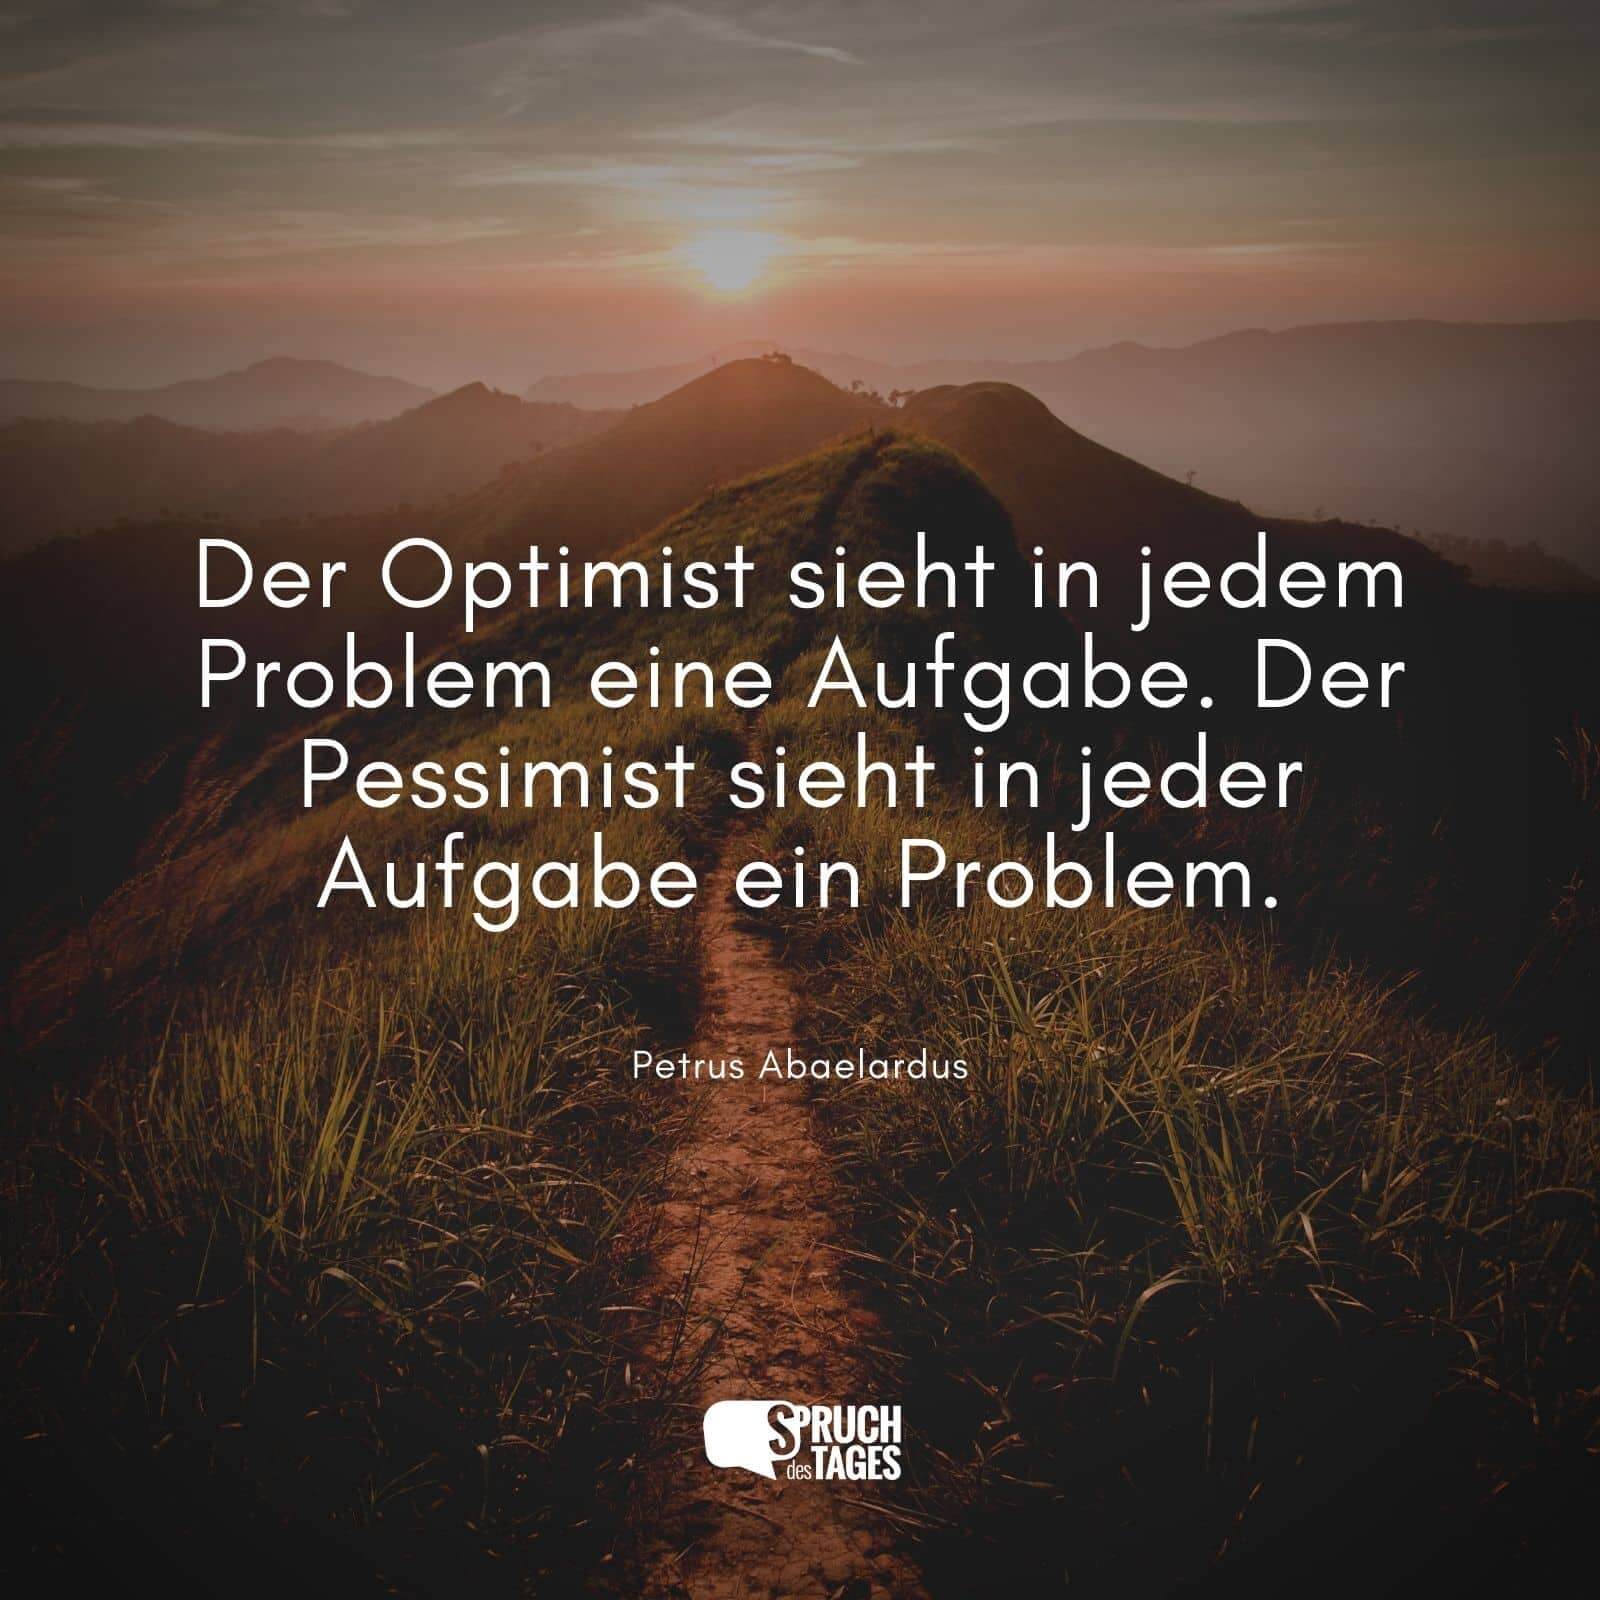 Der Optimist sieht in jedem Problem eine Aufgabe. Der Pessimist sieht in jeder Aufgabe ein Problem.